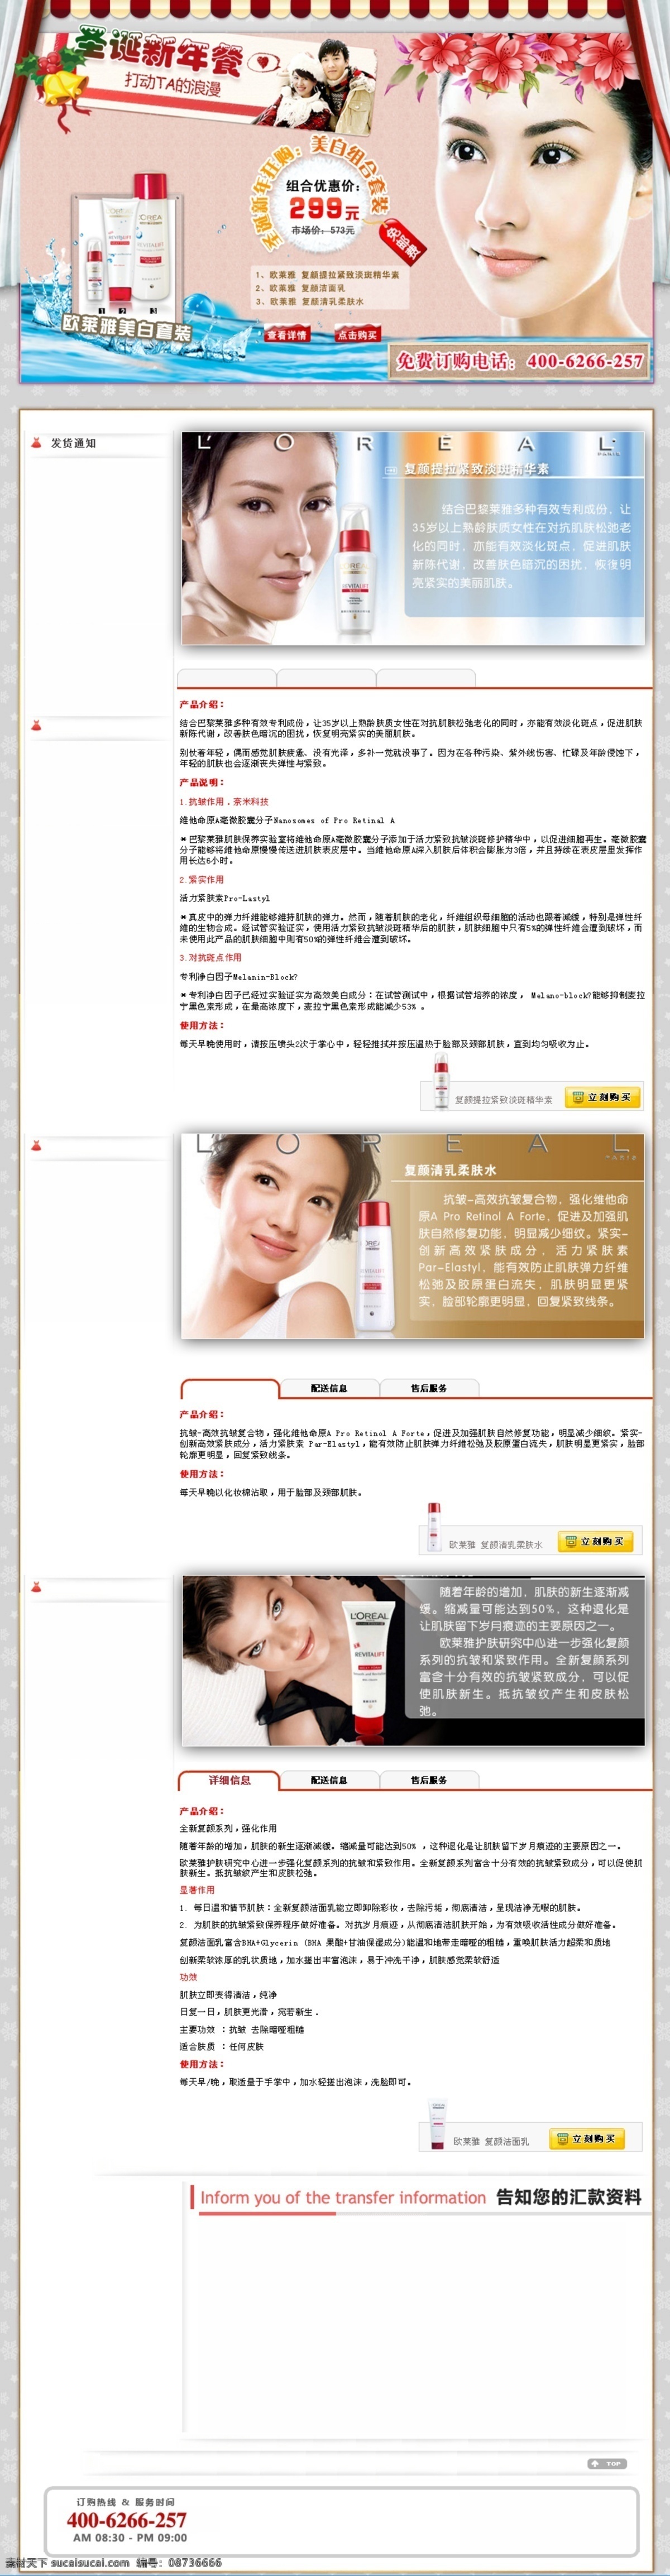 化妆品 促销 专题 网页模板 促销专题 美女 中国风格 网页素材